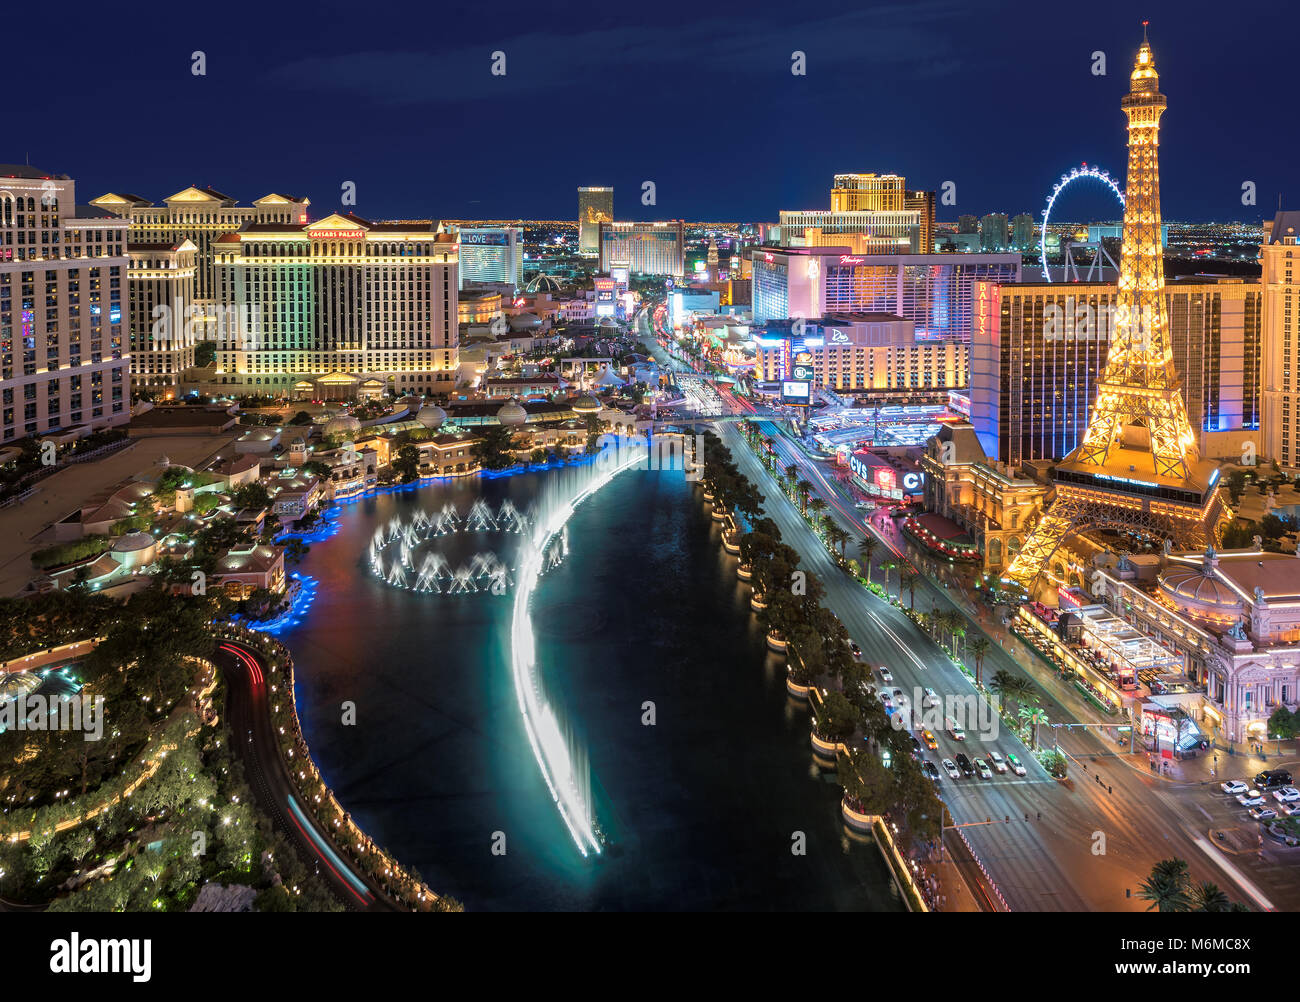 Las Vegas Strip skyline at night Stock Photo - Alamy